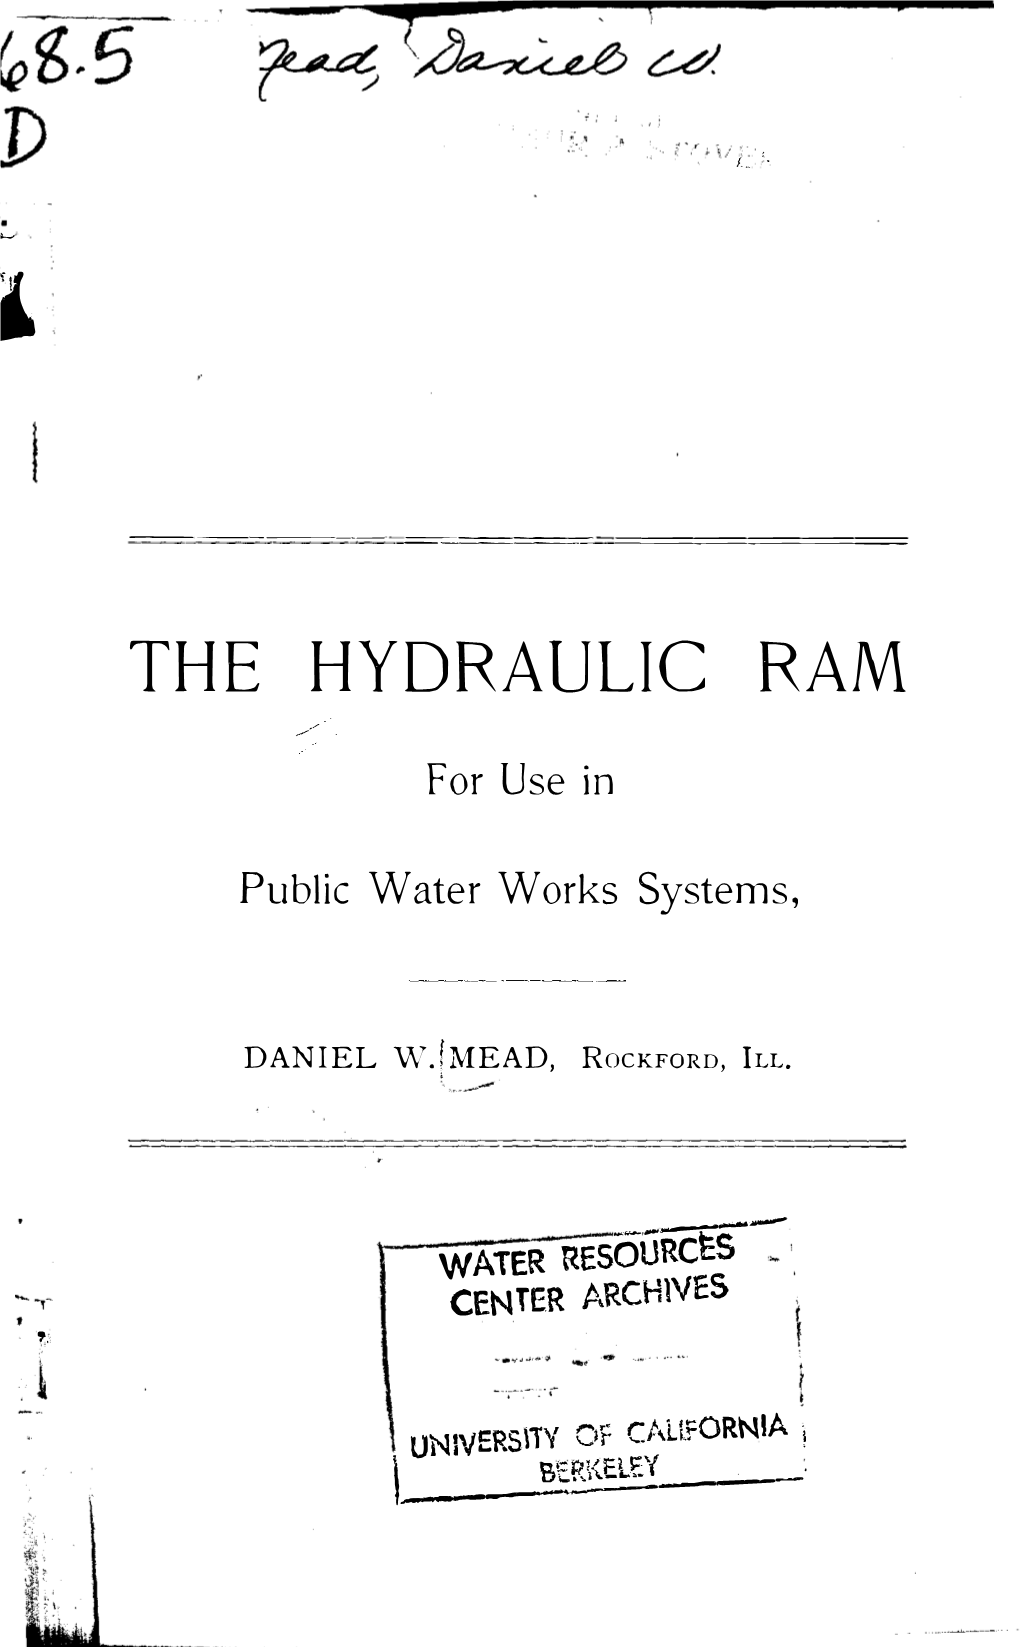 The Hydraulic Ram